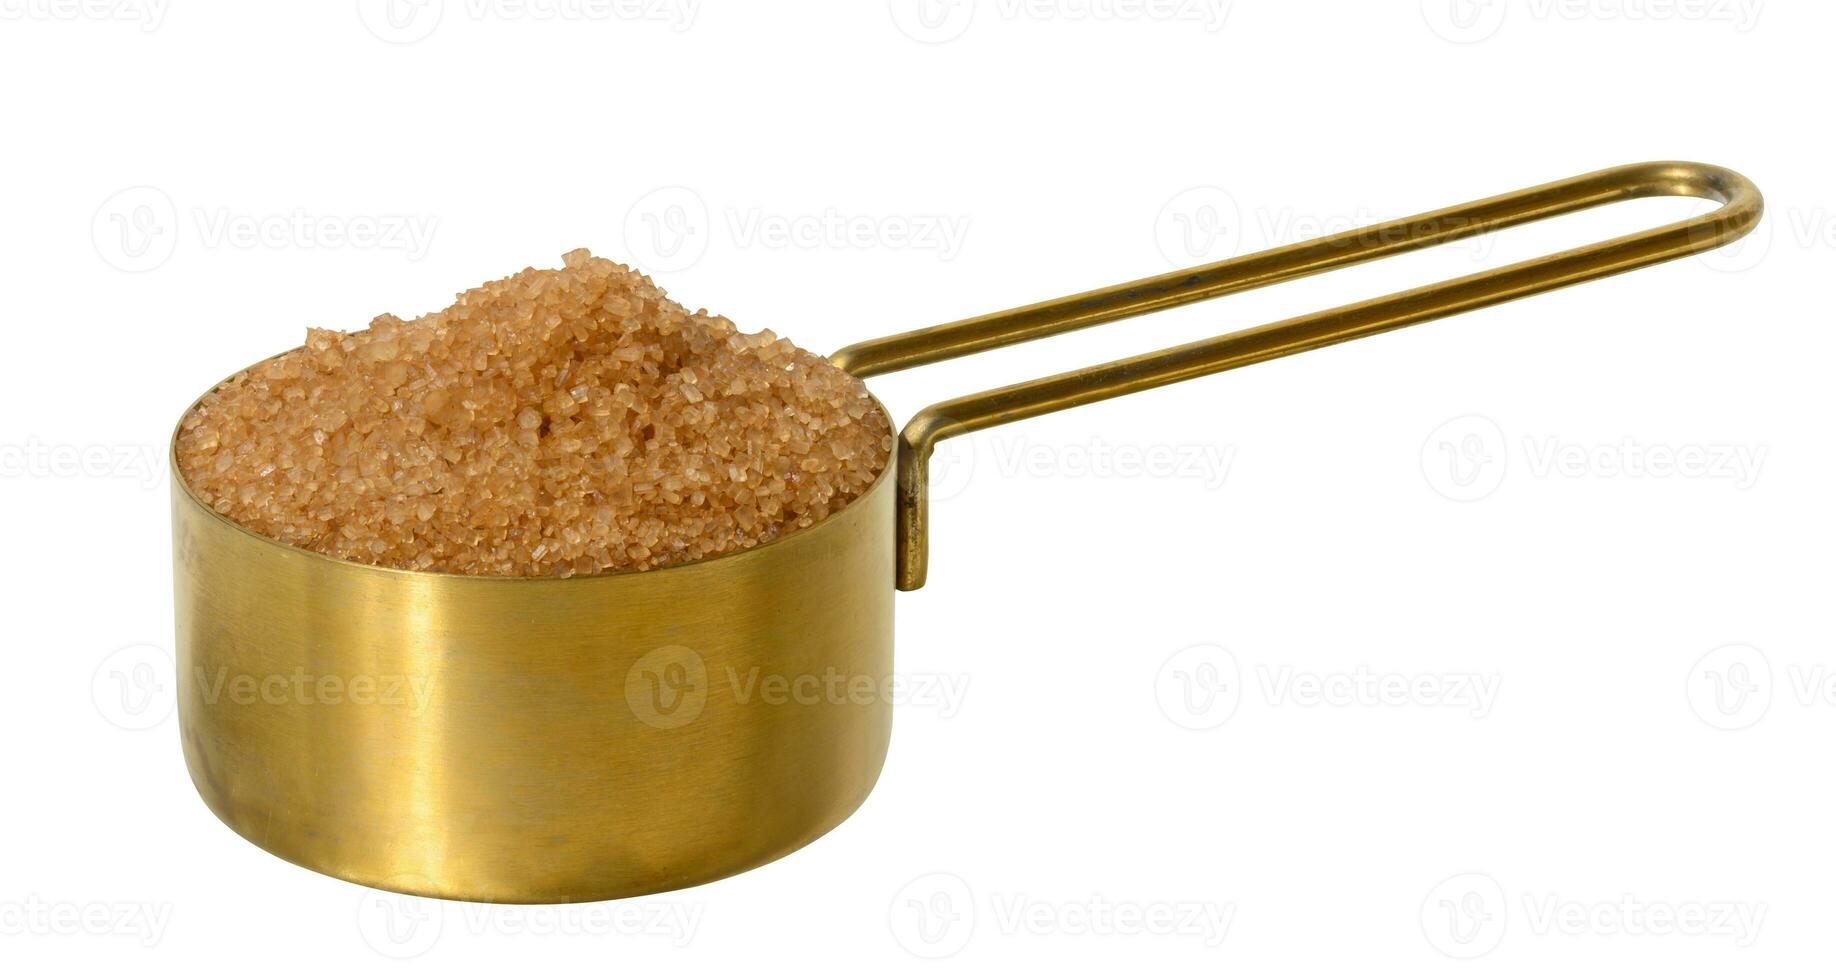 braun Stock Zucker Granulat im ein Metall Schüssel auf ein Weiß isoliert Hintergrund foto